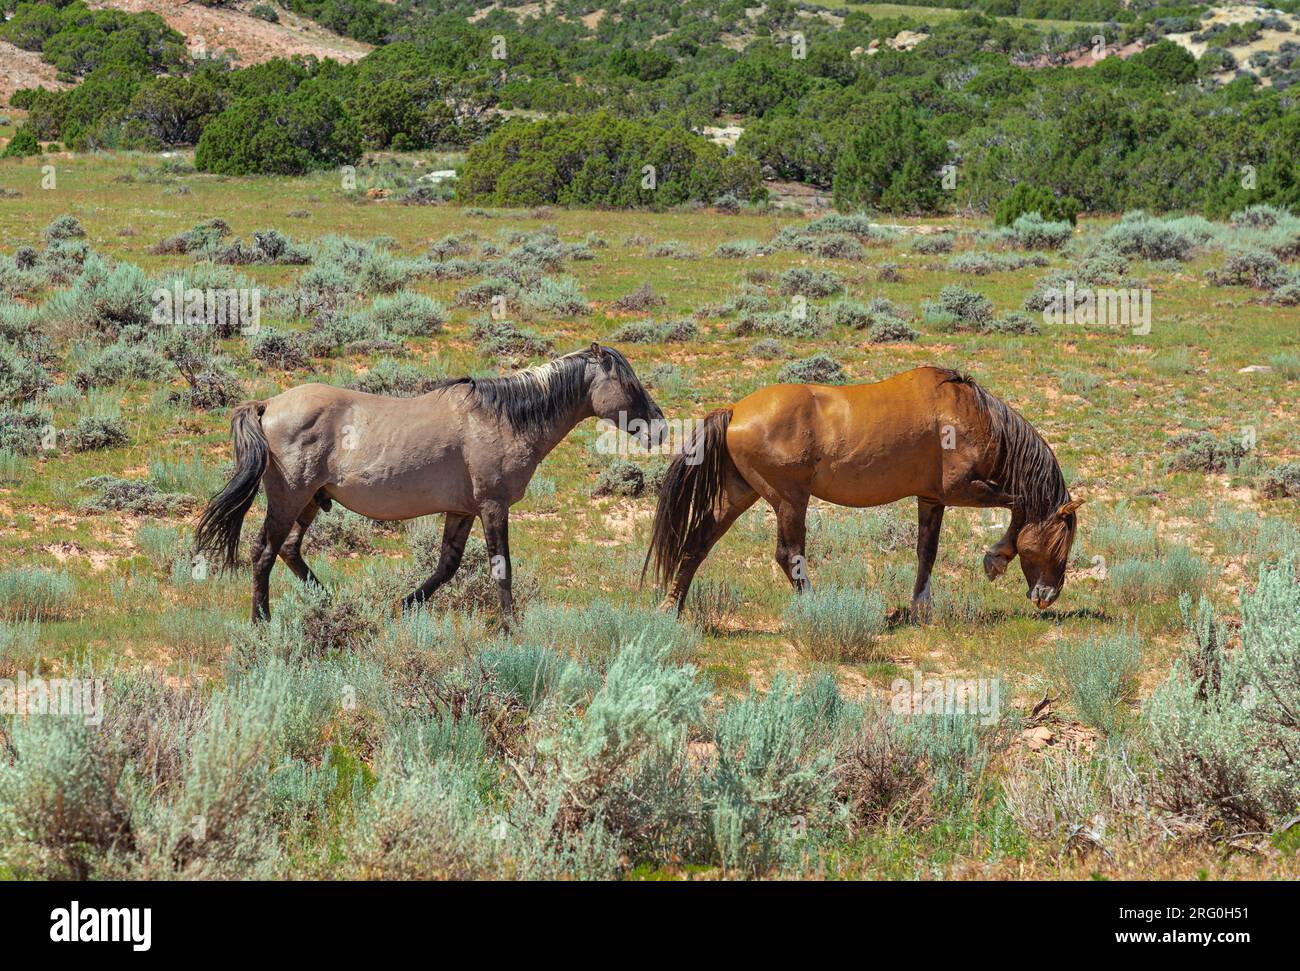 Deux chevaux sauvages sont vus paître ensemble sur la terre de Bighorn National Recreation Area dans le Montana et le Wyoming. Refuge pour animaux sauvages. Banque D'Images